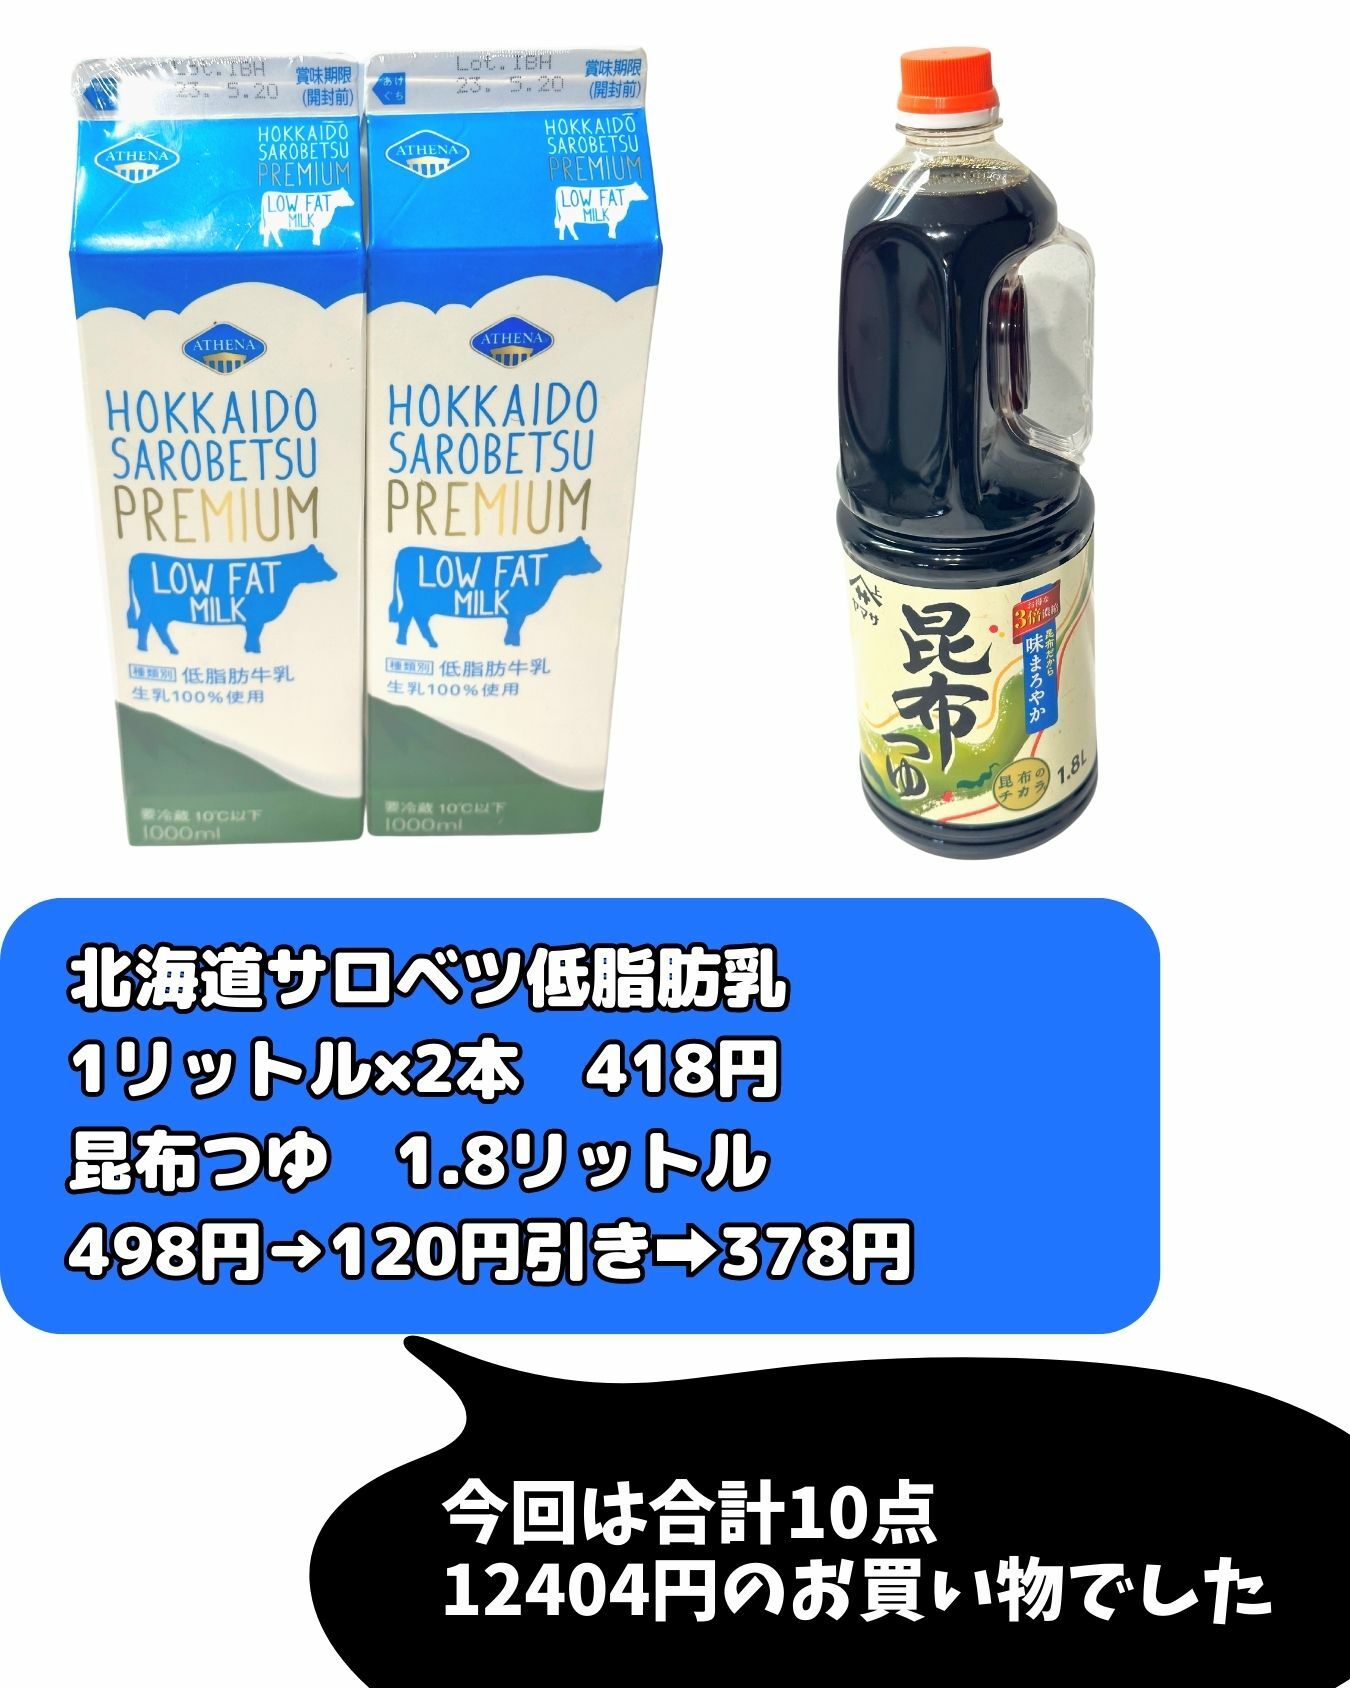 【コストコ】北海道サロベツ低脂肪乳/昆布つゆ